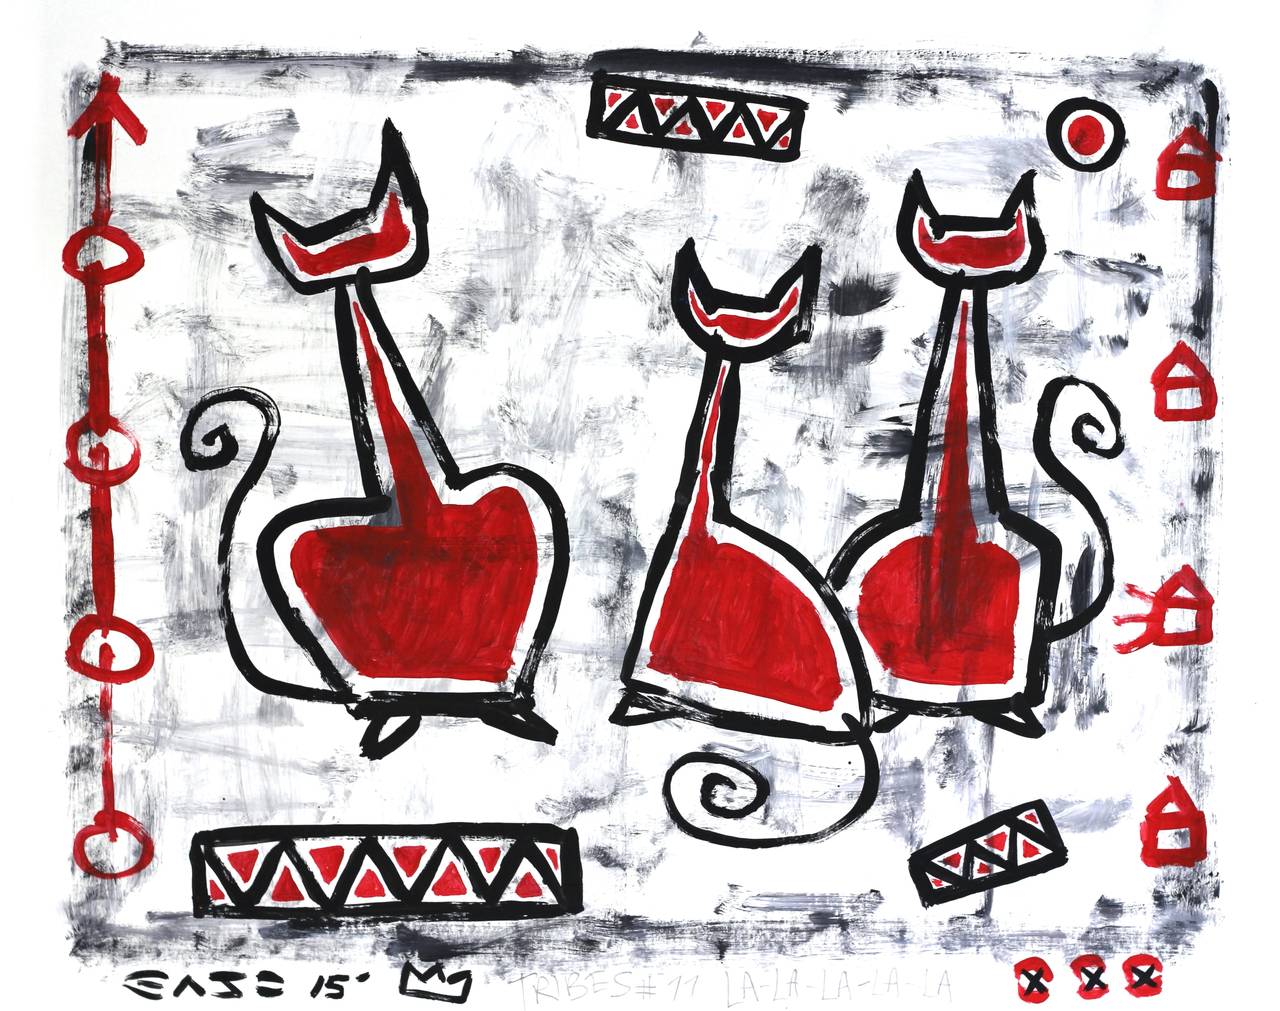 Best Friends – Drei rote Katzen, figurative abstrakte Kunst des Straßenkünstlers Gary John